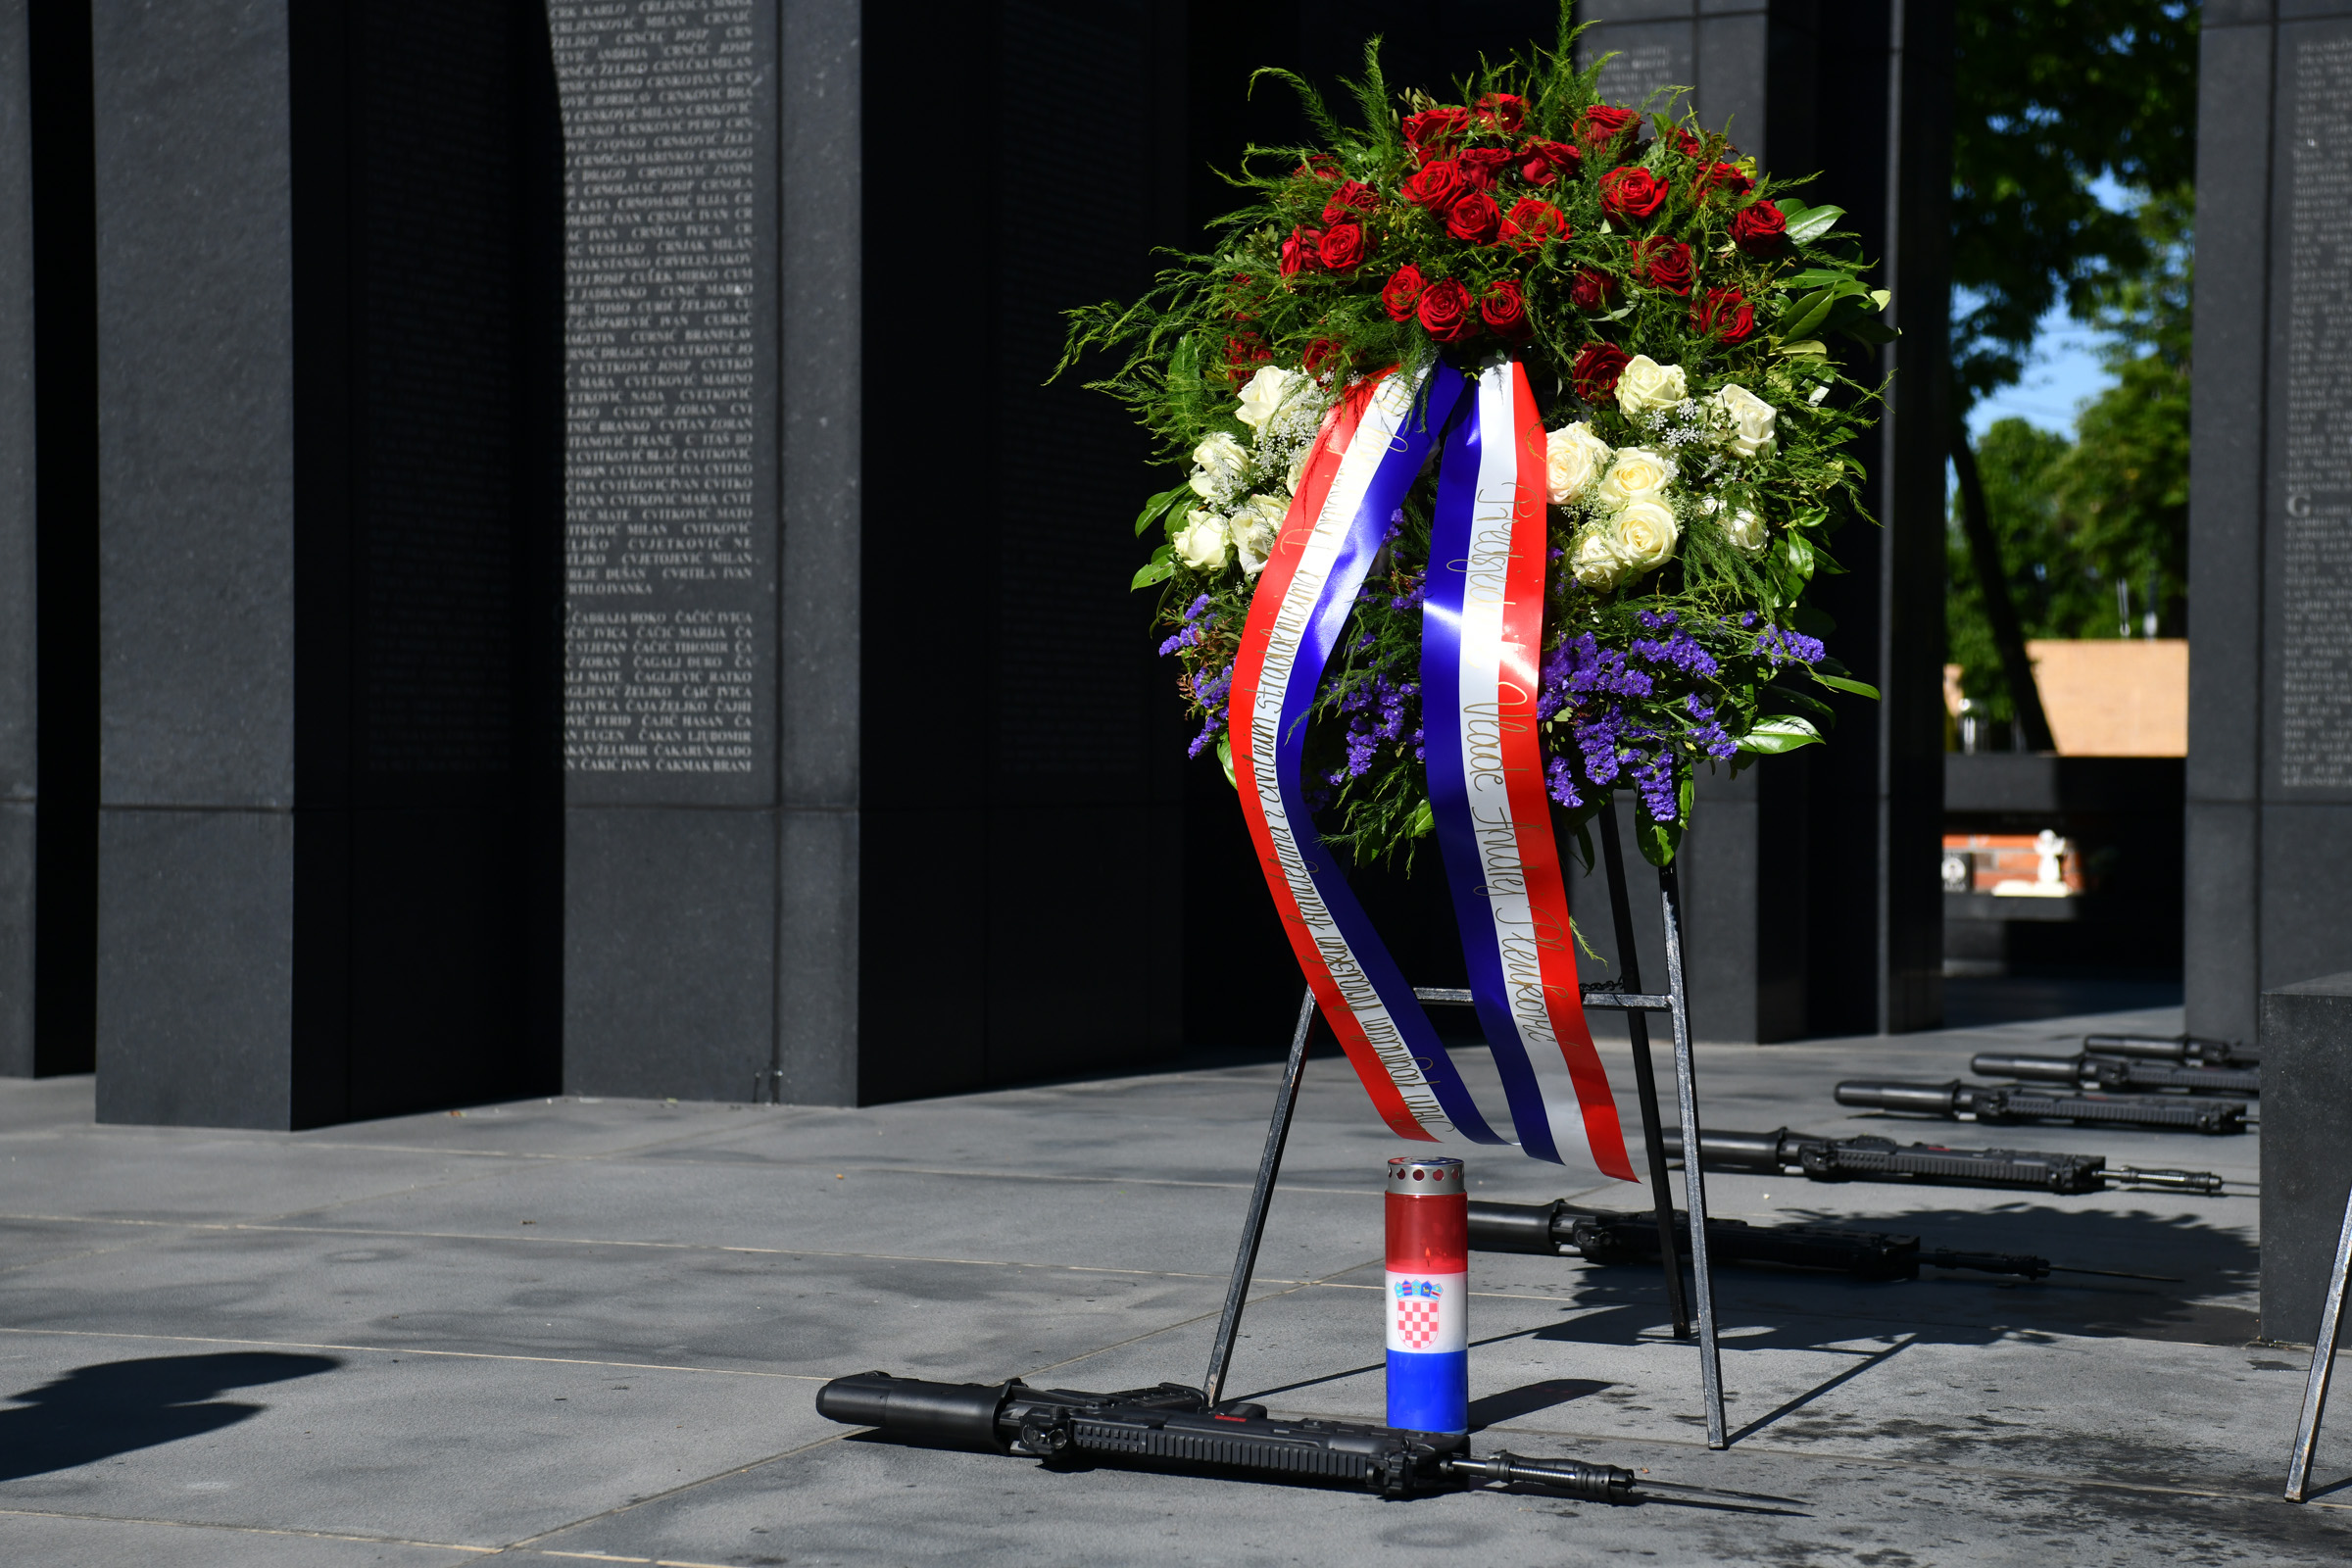 Svečano obilježavanje Dana Hrvatske vojske na groblju Mirogoj